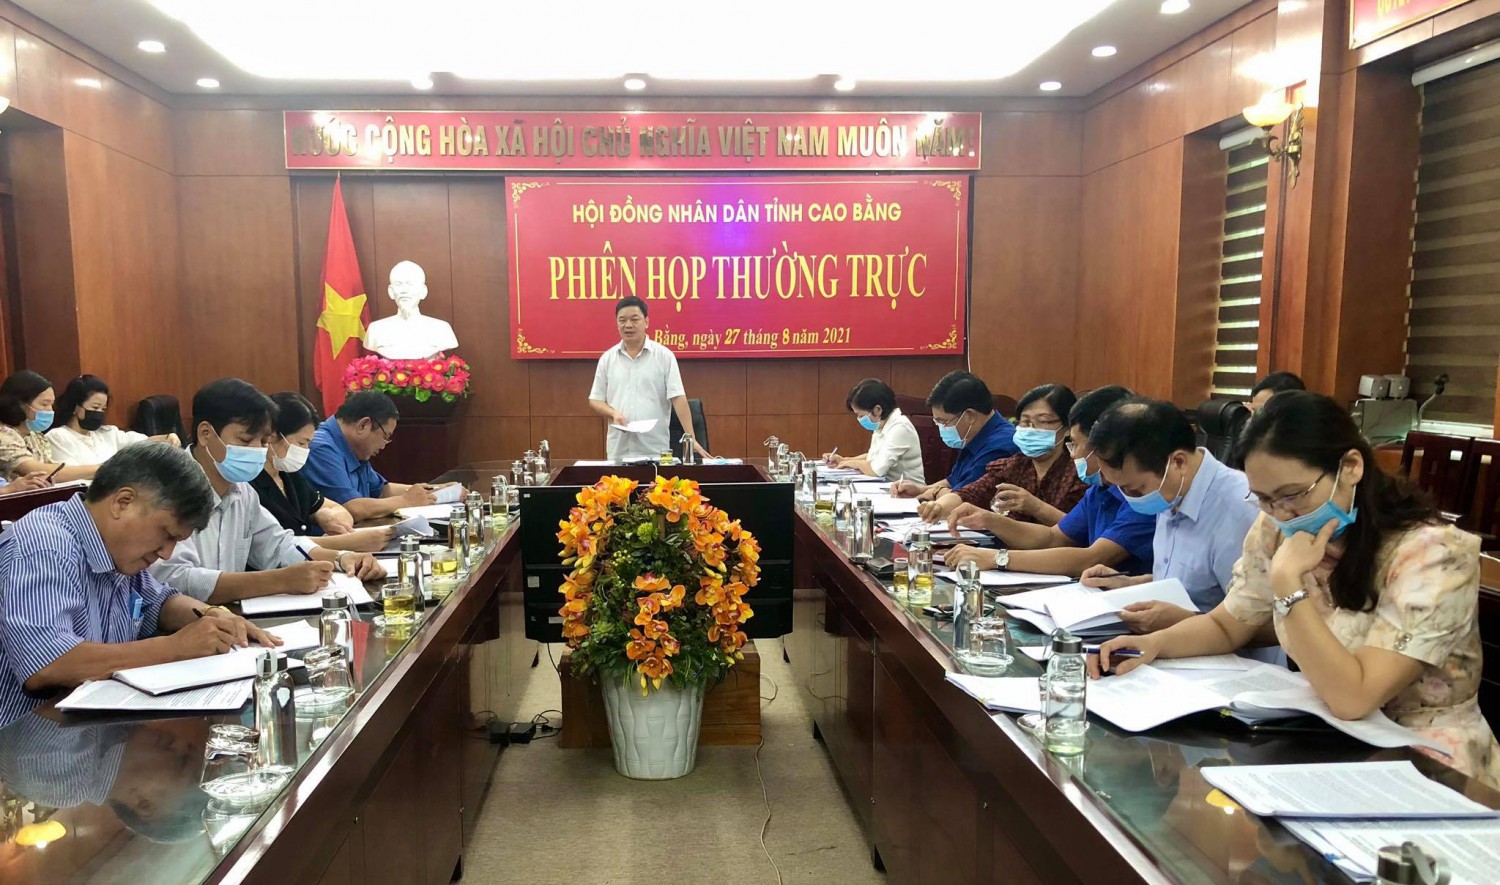 rưởng Ban Kinh tế - Ngân sách HĐND tỉnh La Văn Hồng phát biểu kết luận buổi giám sát.